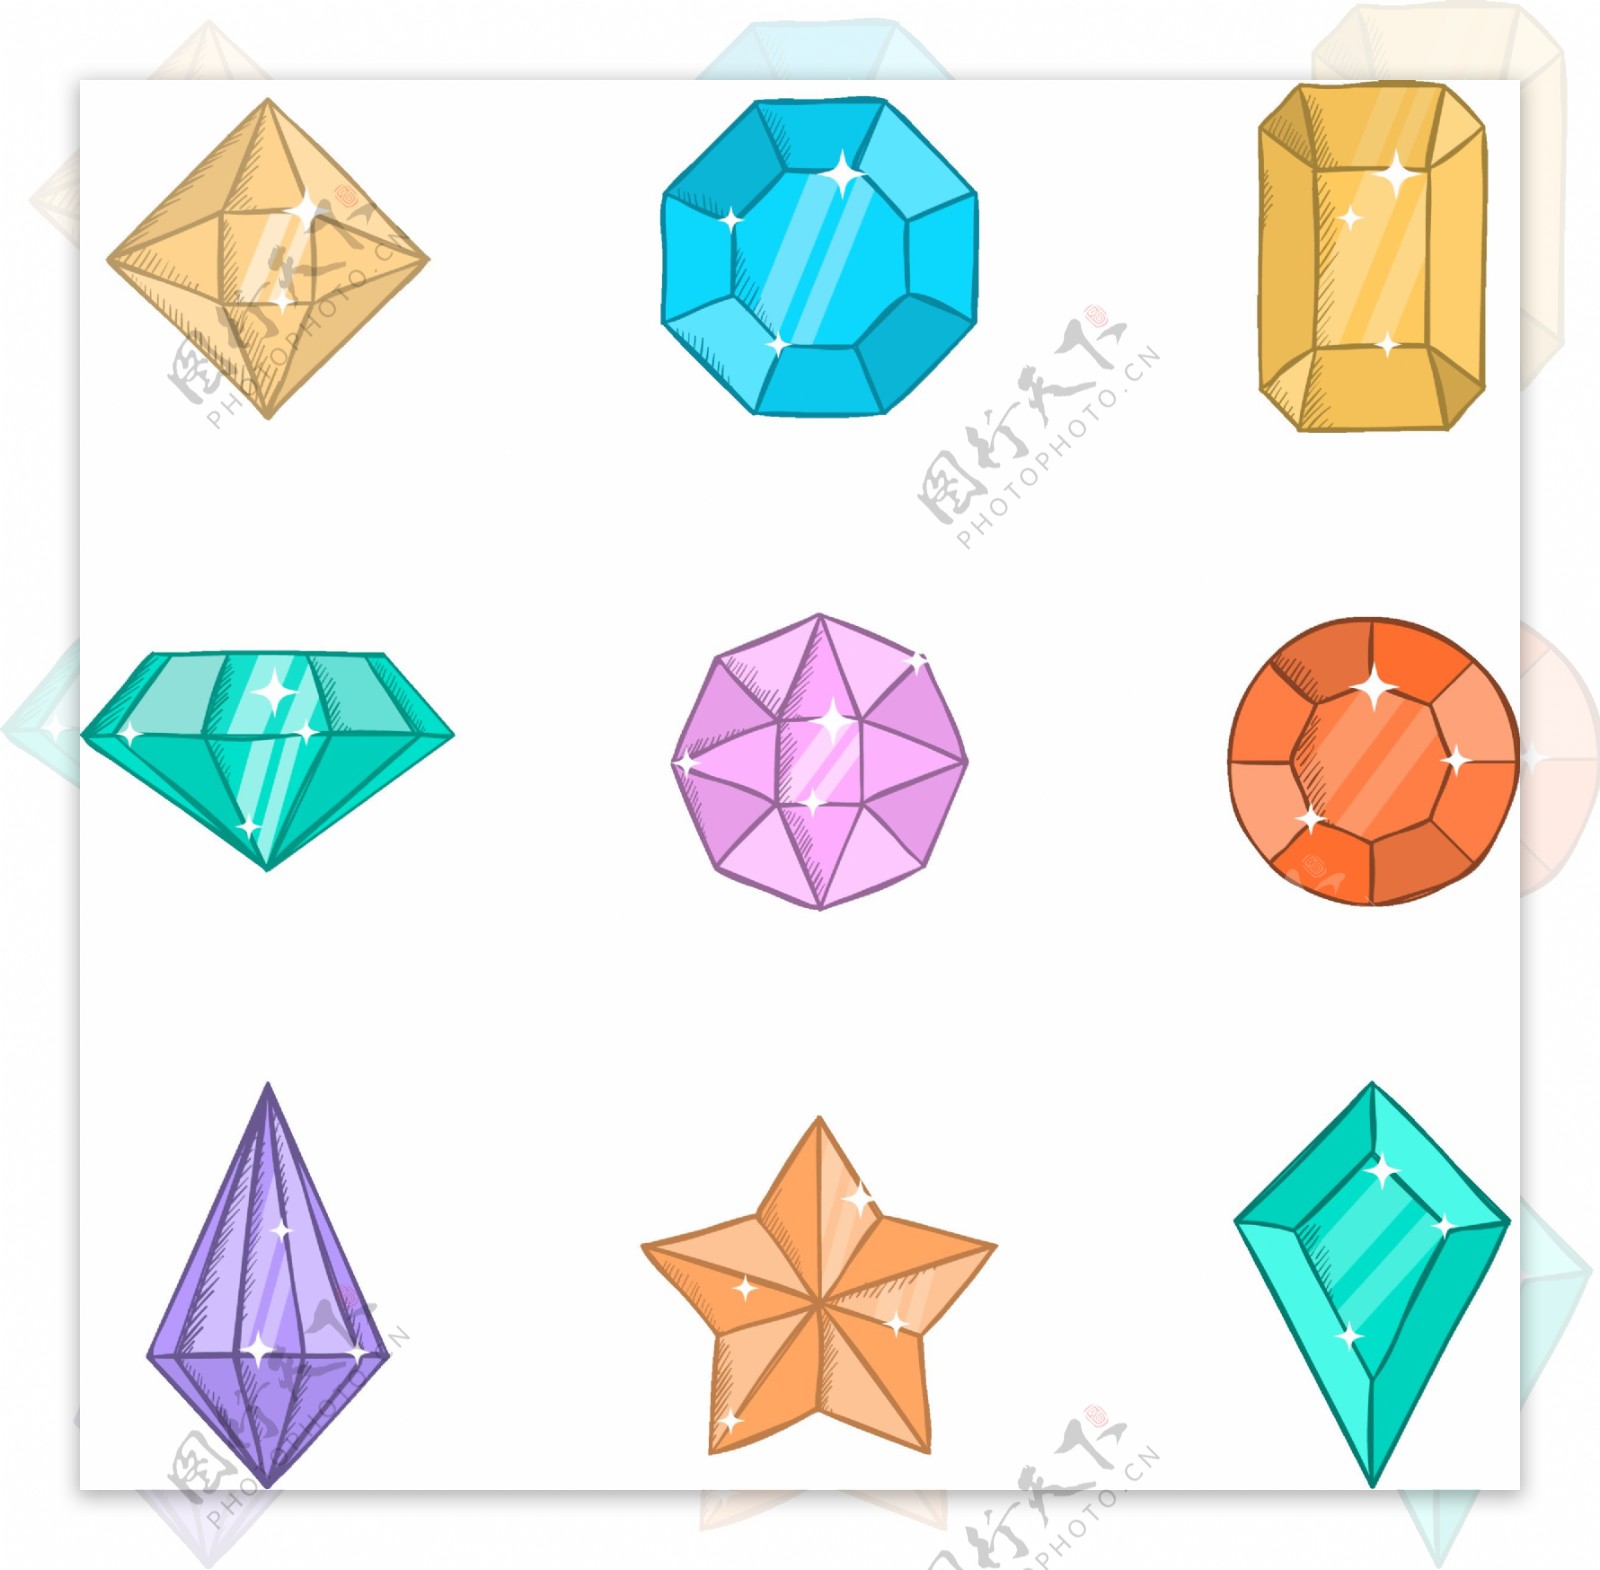 一组彩色钻石设计素材